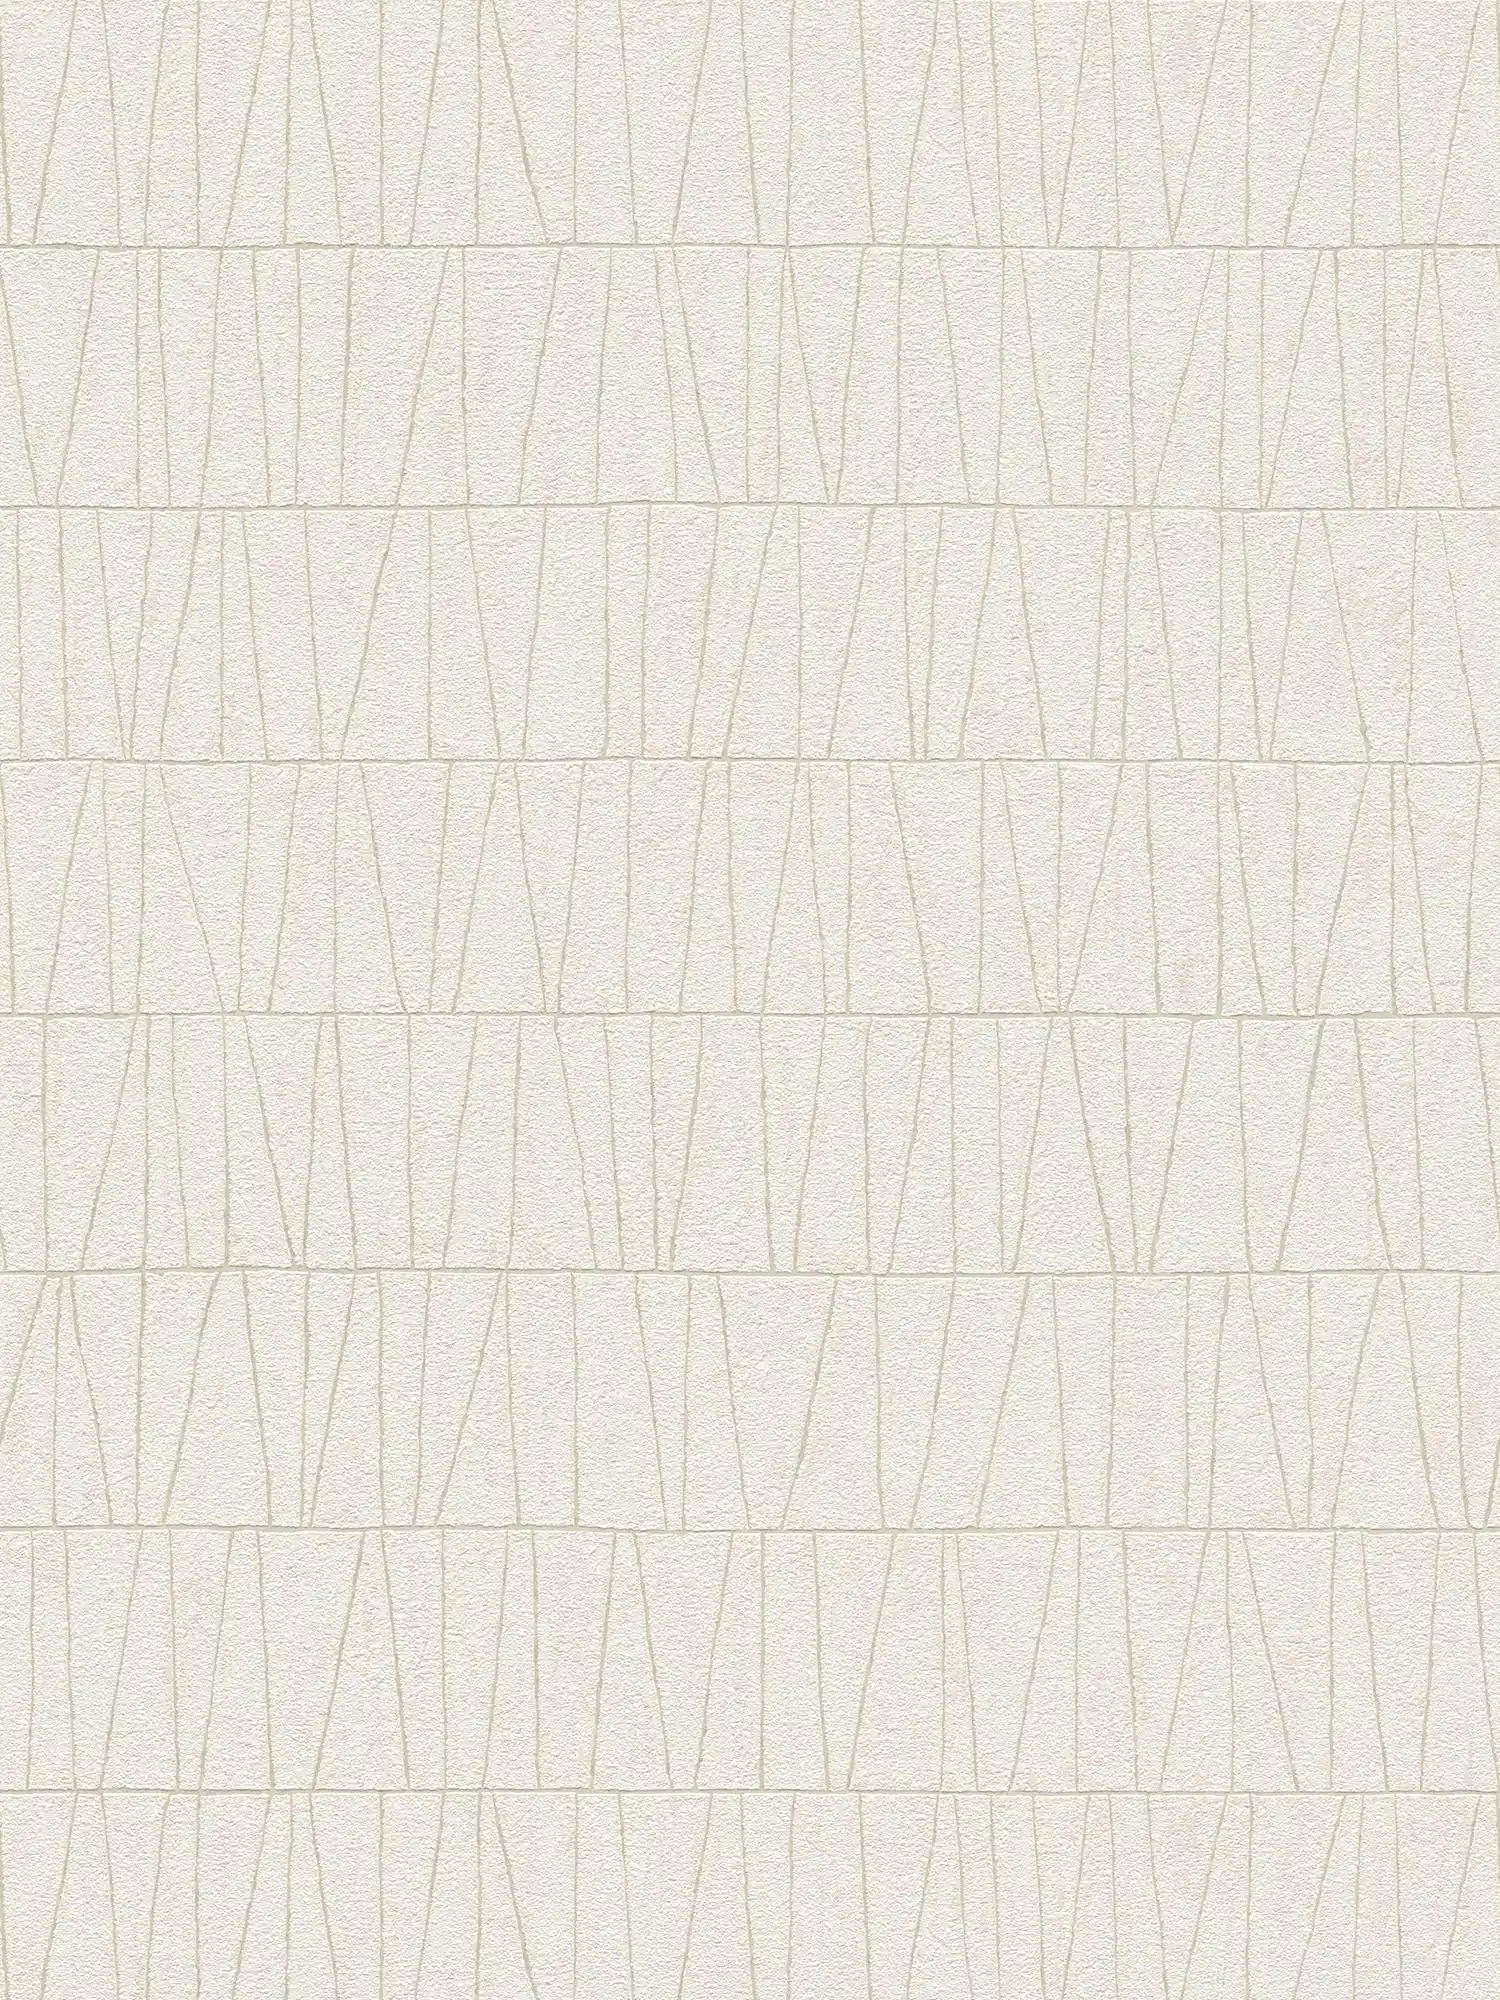 Patroonbehang met lineaire rangschikking - wit, goud
